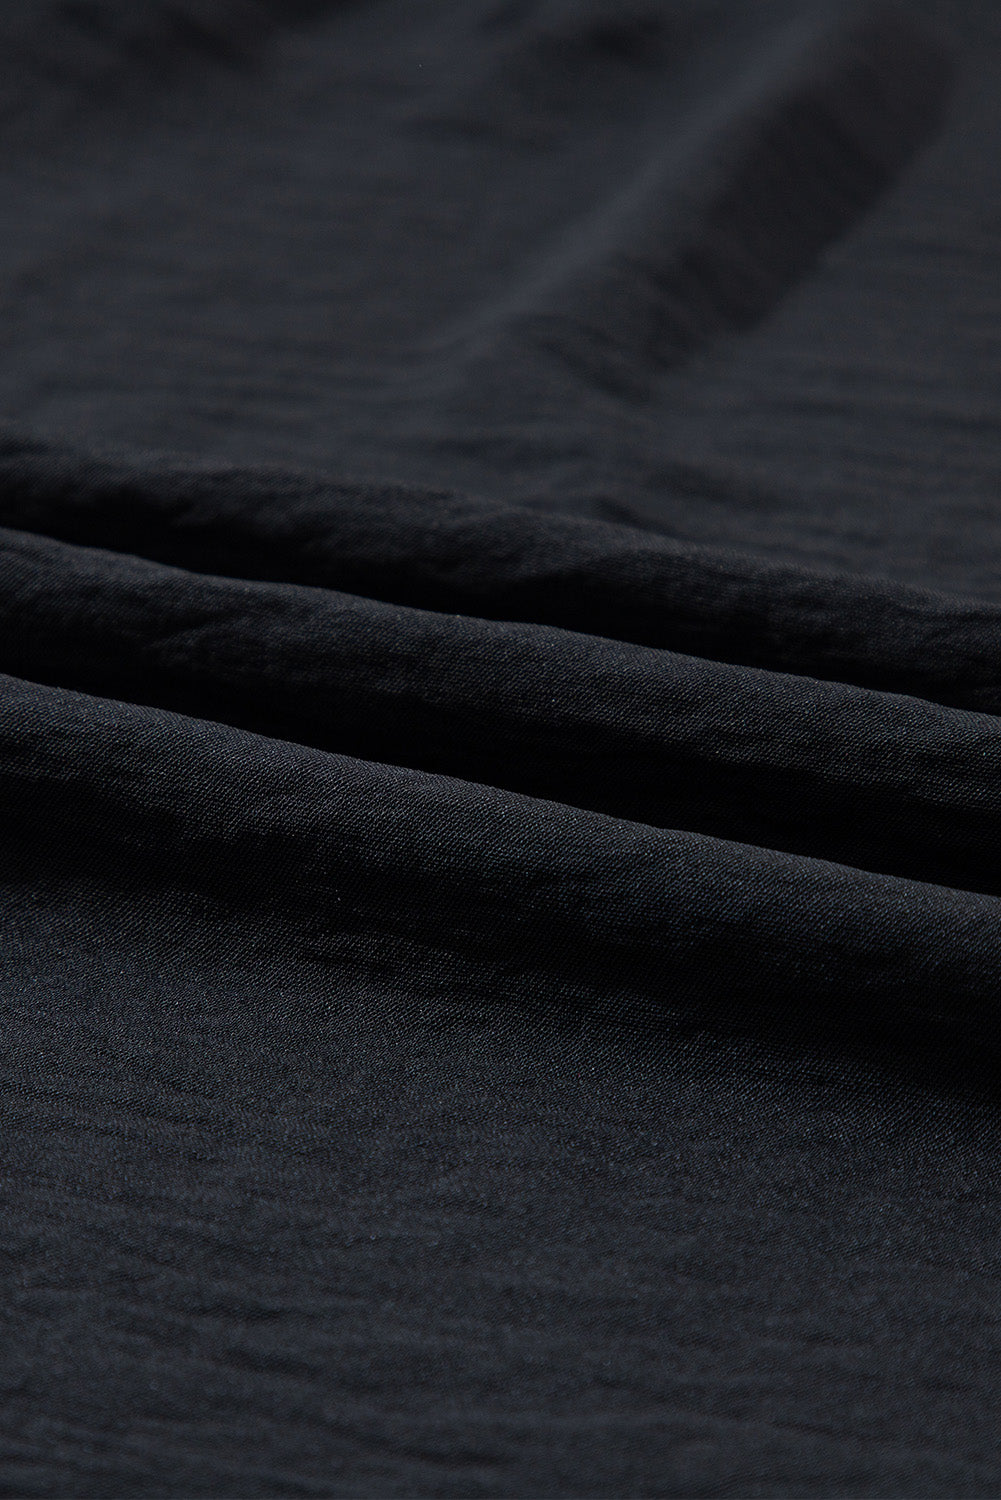 Schwarzes, einfarbiges, ärmelloses Etui-Minikleid mit Rüschen